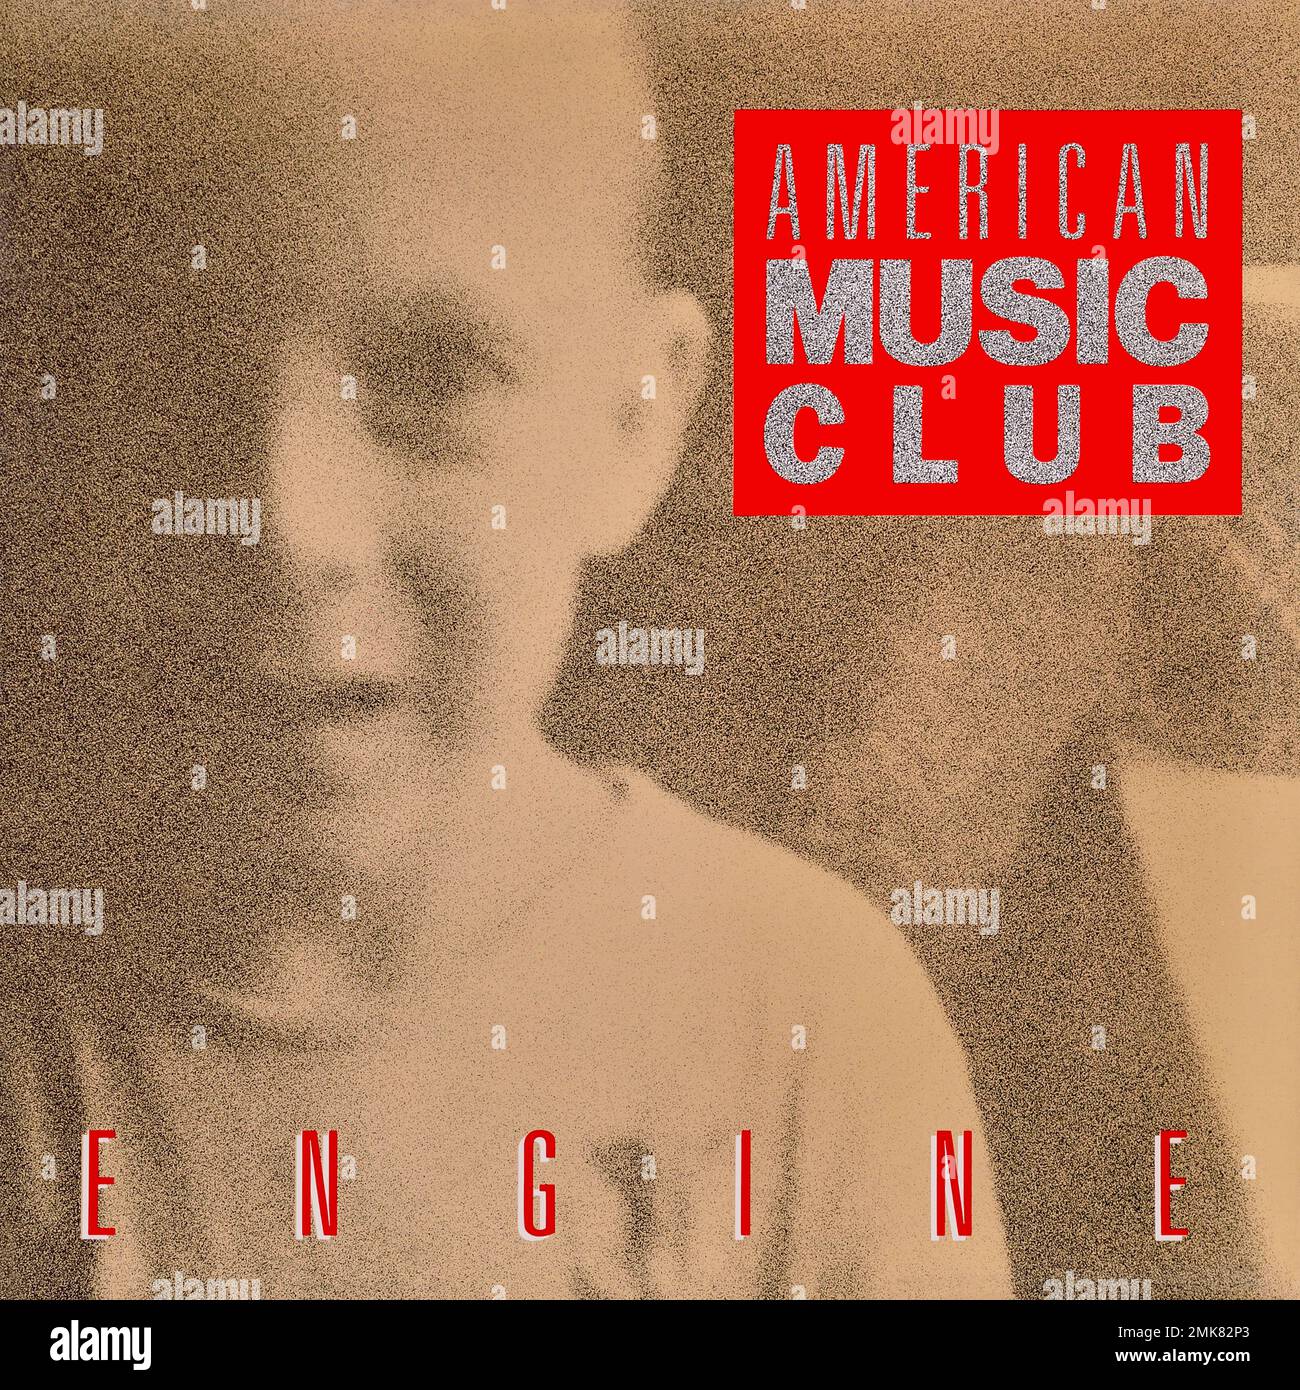 American Music Club - original vinyl album cover - Engine - 1987 Stock Photo